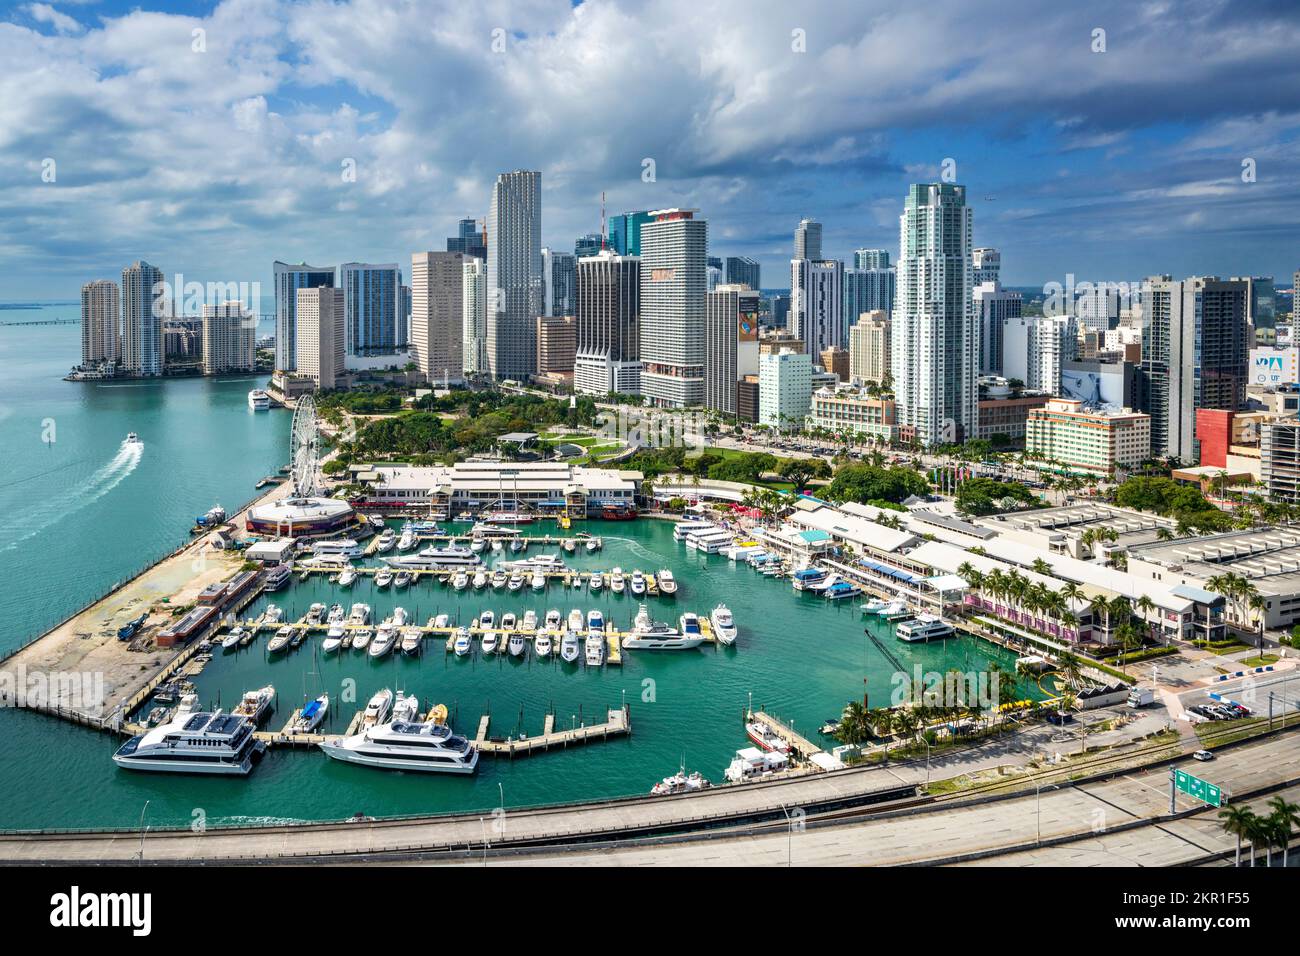 Luftaufnahme von einem Hubschrauber der Innenstadt von Miami, Marketplace South Miami Beach, Miami Dade, Florida Nordamerika, USA Stockfoto